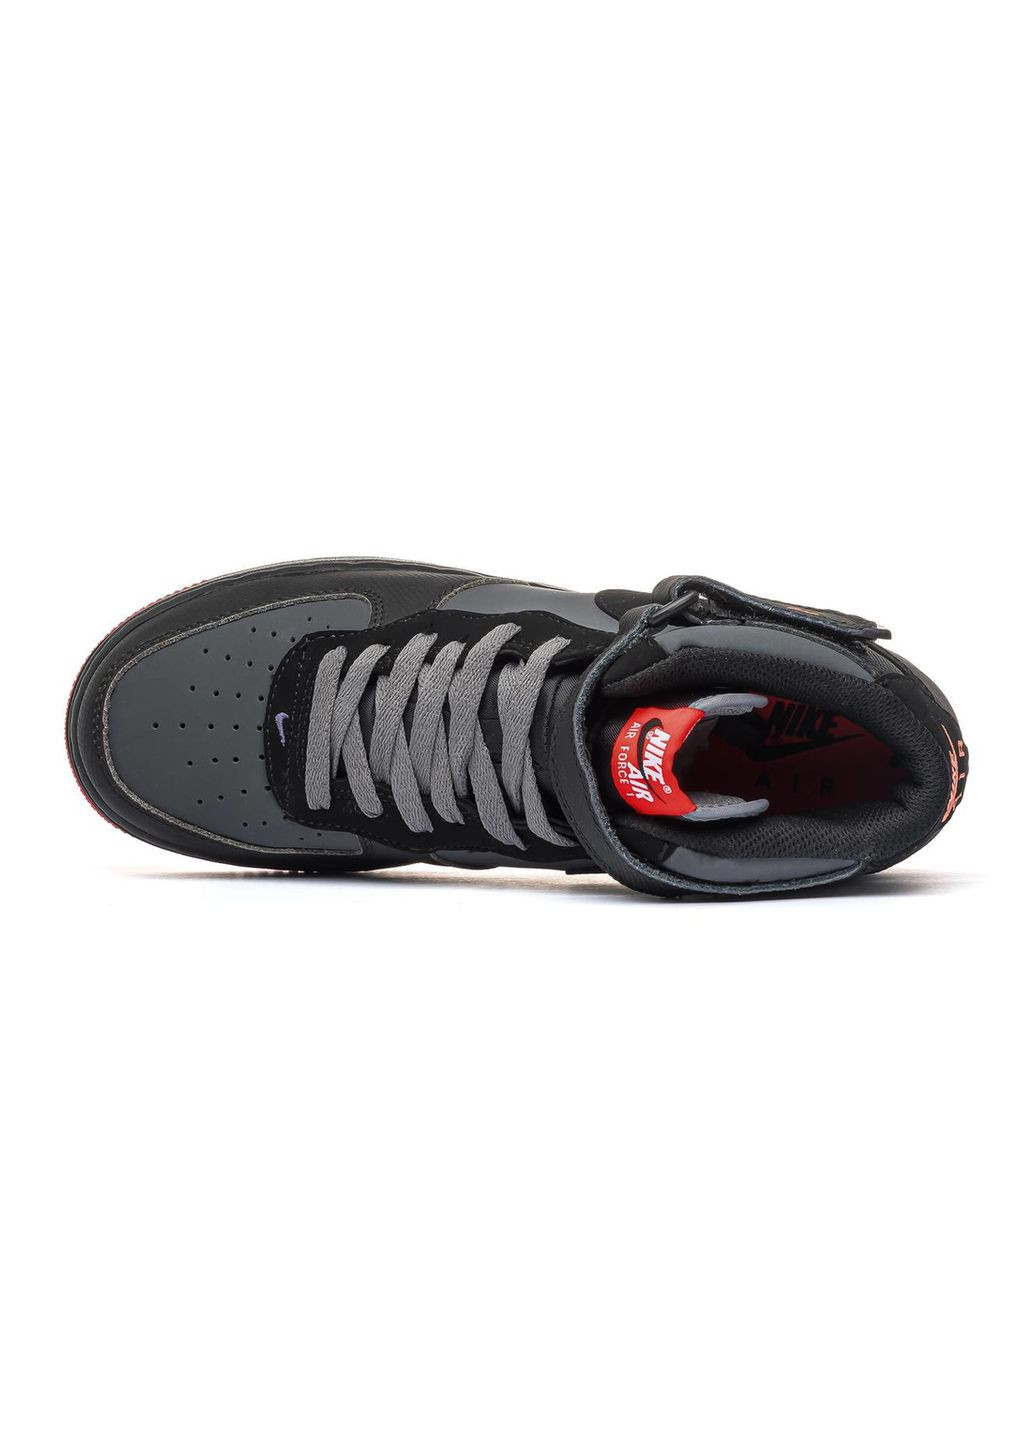 Серые демисезонные кроссовки мужские 1 mid '07 black red, вьетнам Nike Air Force